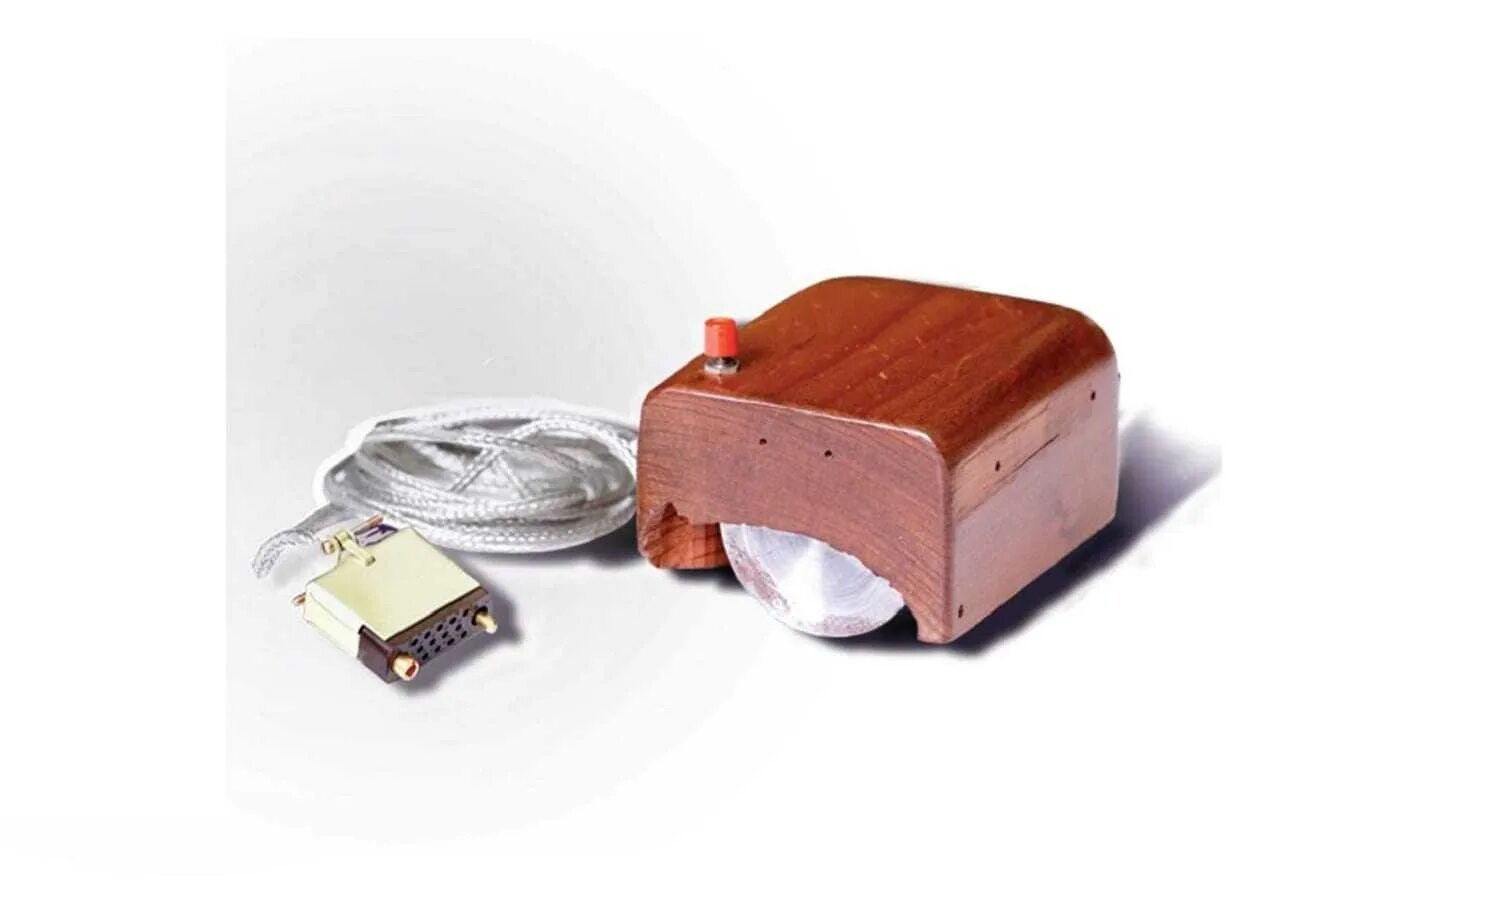 Создание мыши. Дуглас Энгельбарт компьютерная мышь. Первая компьютерная мышь Дугласа Энгельбарта. 1968 Год компьютерная мышь – Дуглас Энгельбарт. Компьютерный манипулятор мышь.